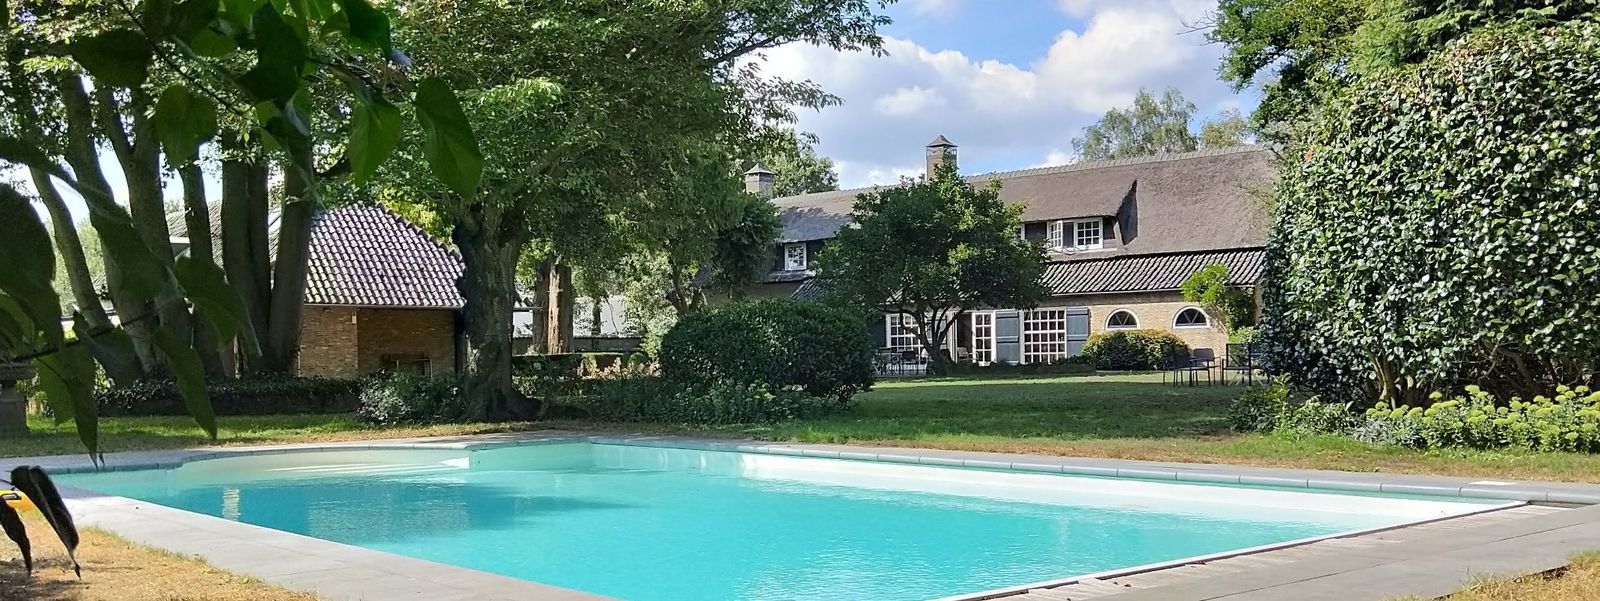 Vrachelse Heide - luxe vakantiehuis in Brabant met zwembad 